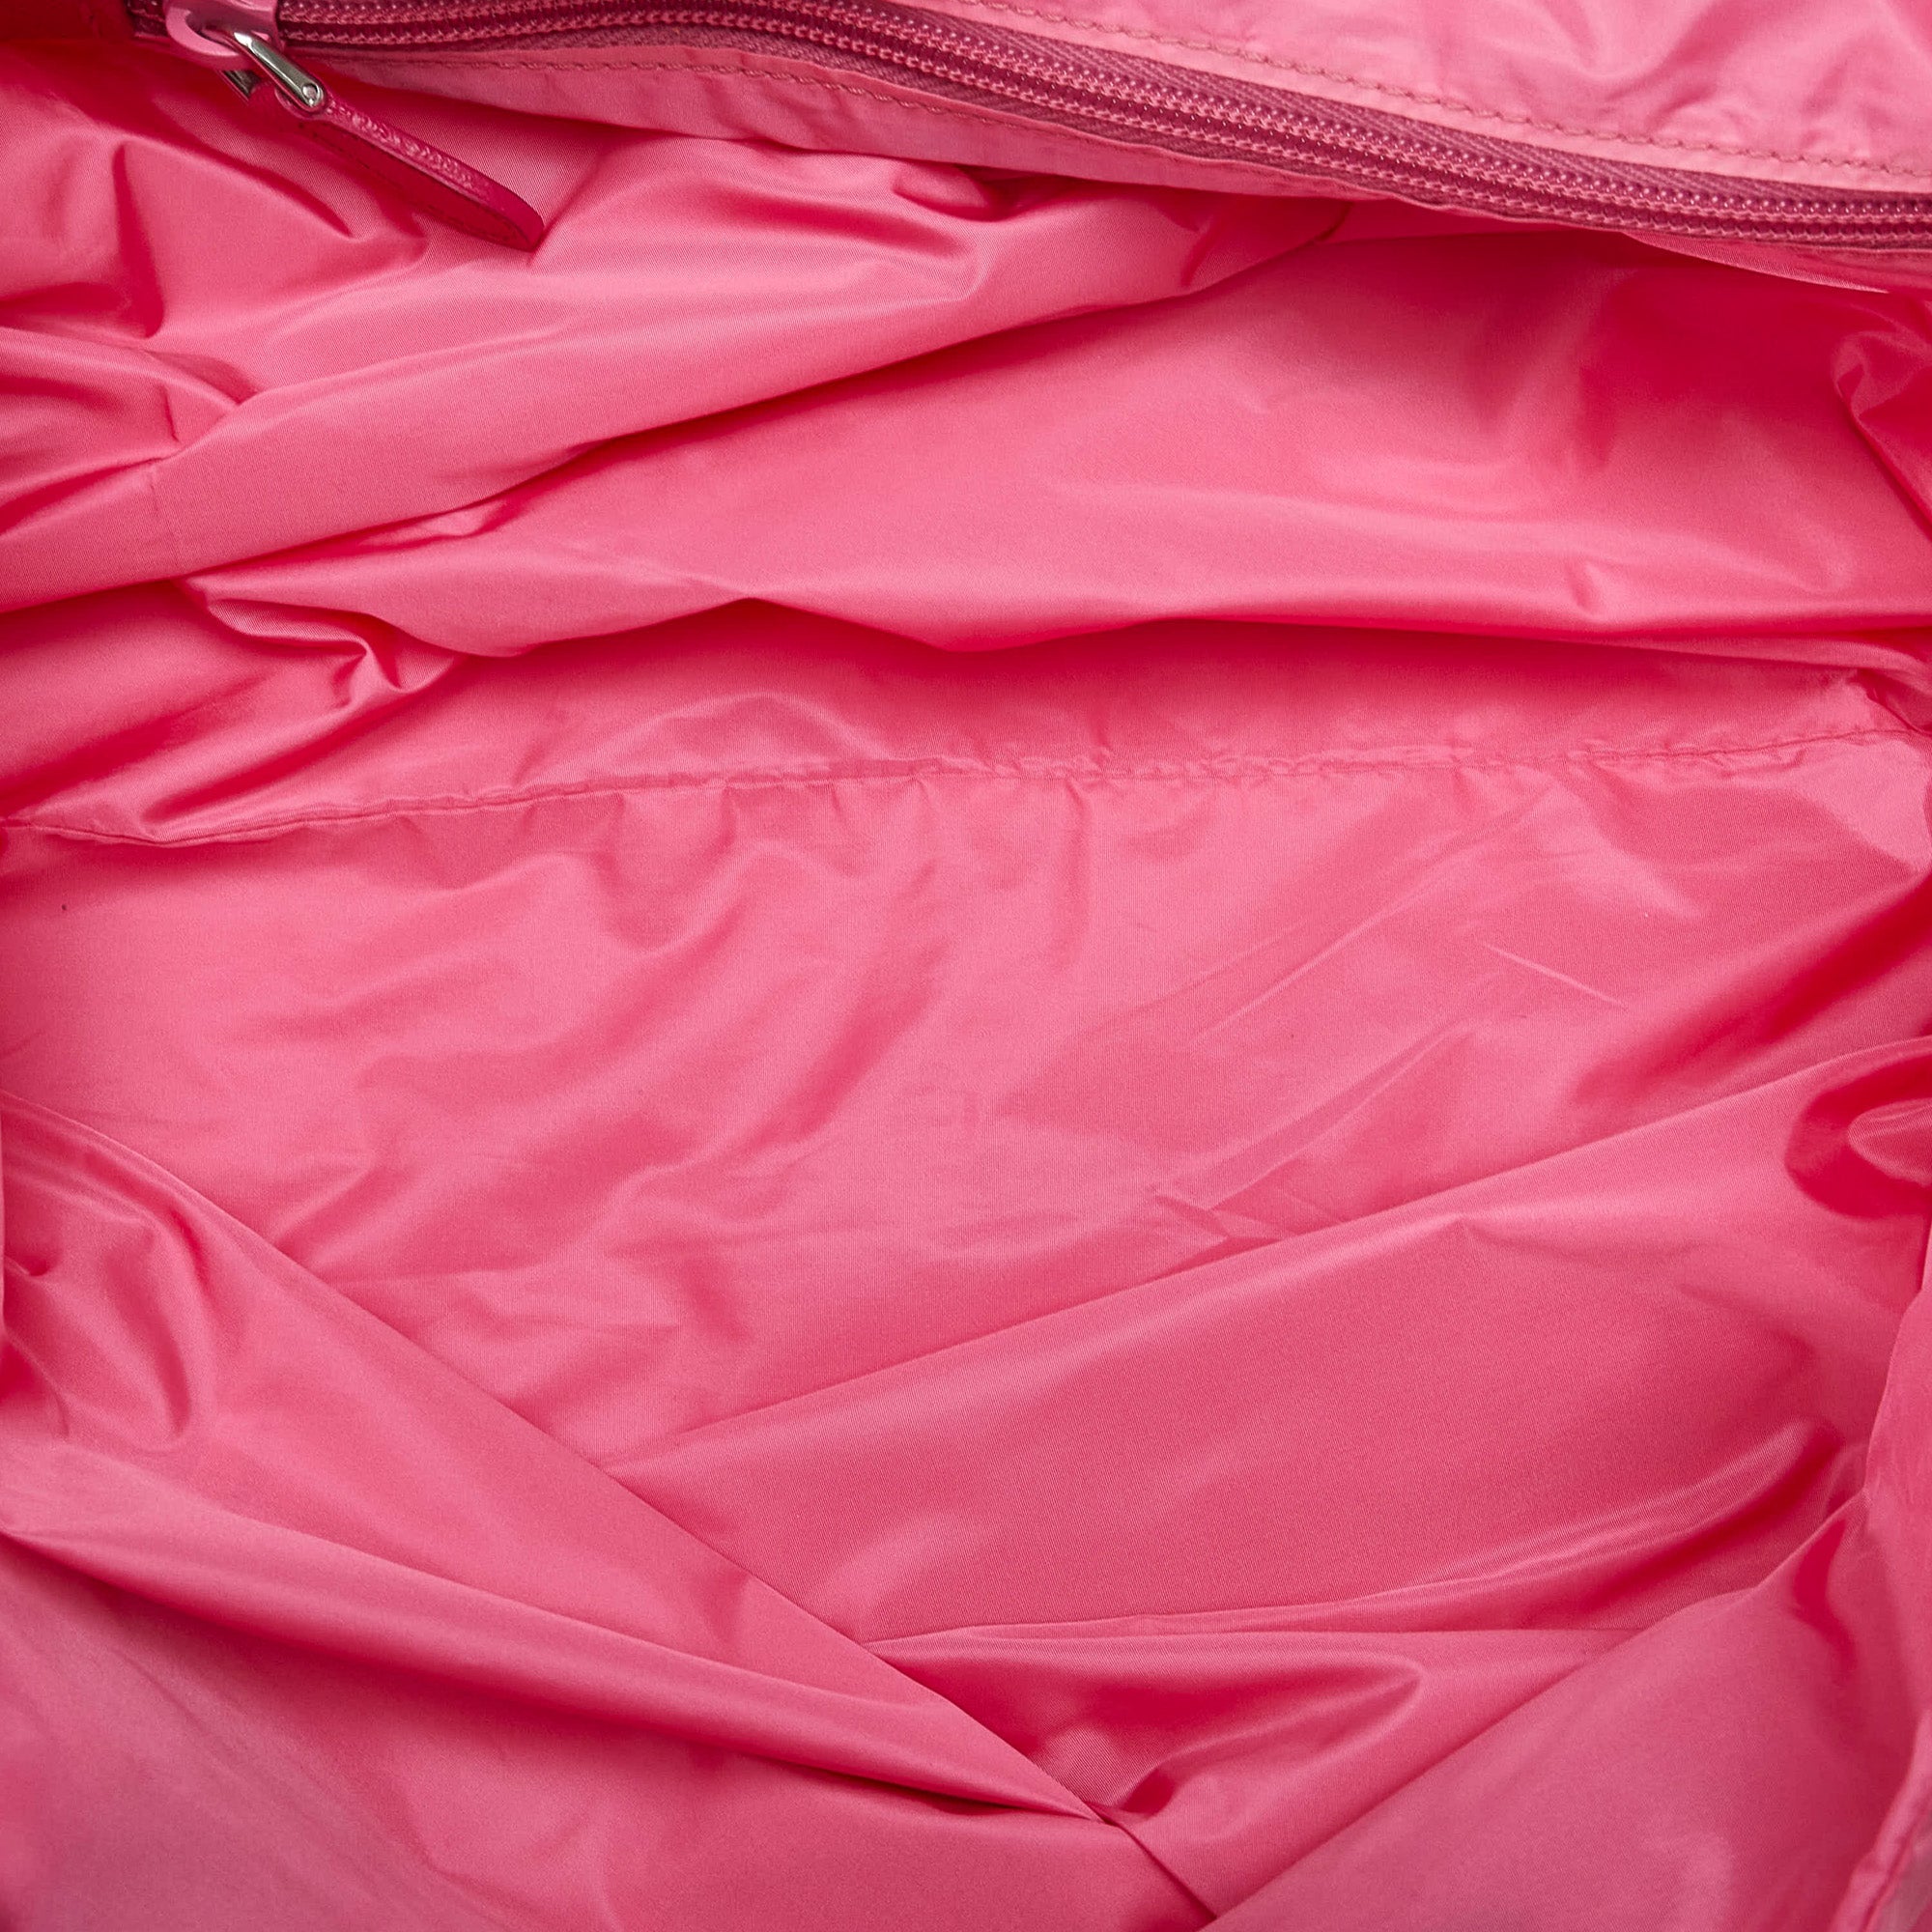 Pink Prada Tessuto Tote – Designer Revival